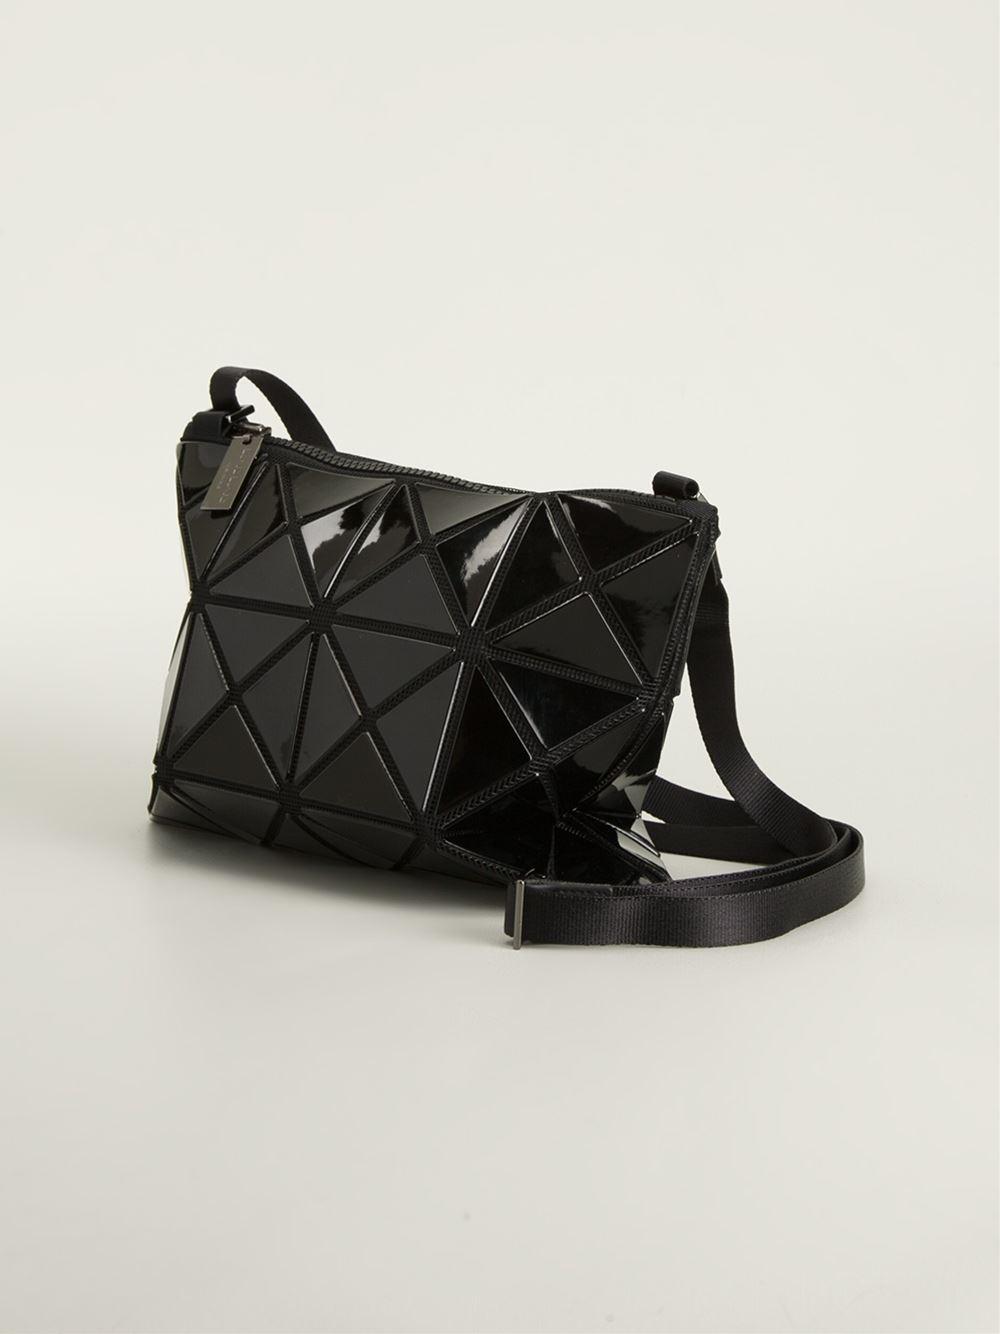 Lyst - Bao Bao Issey Miyake 'prism' Shoulder Bag in Black